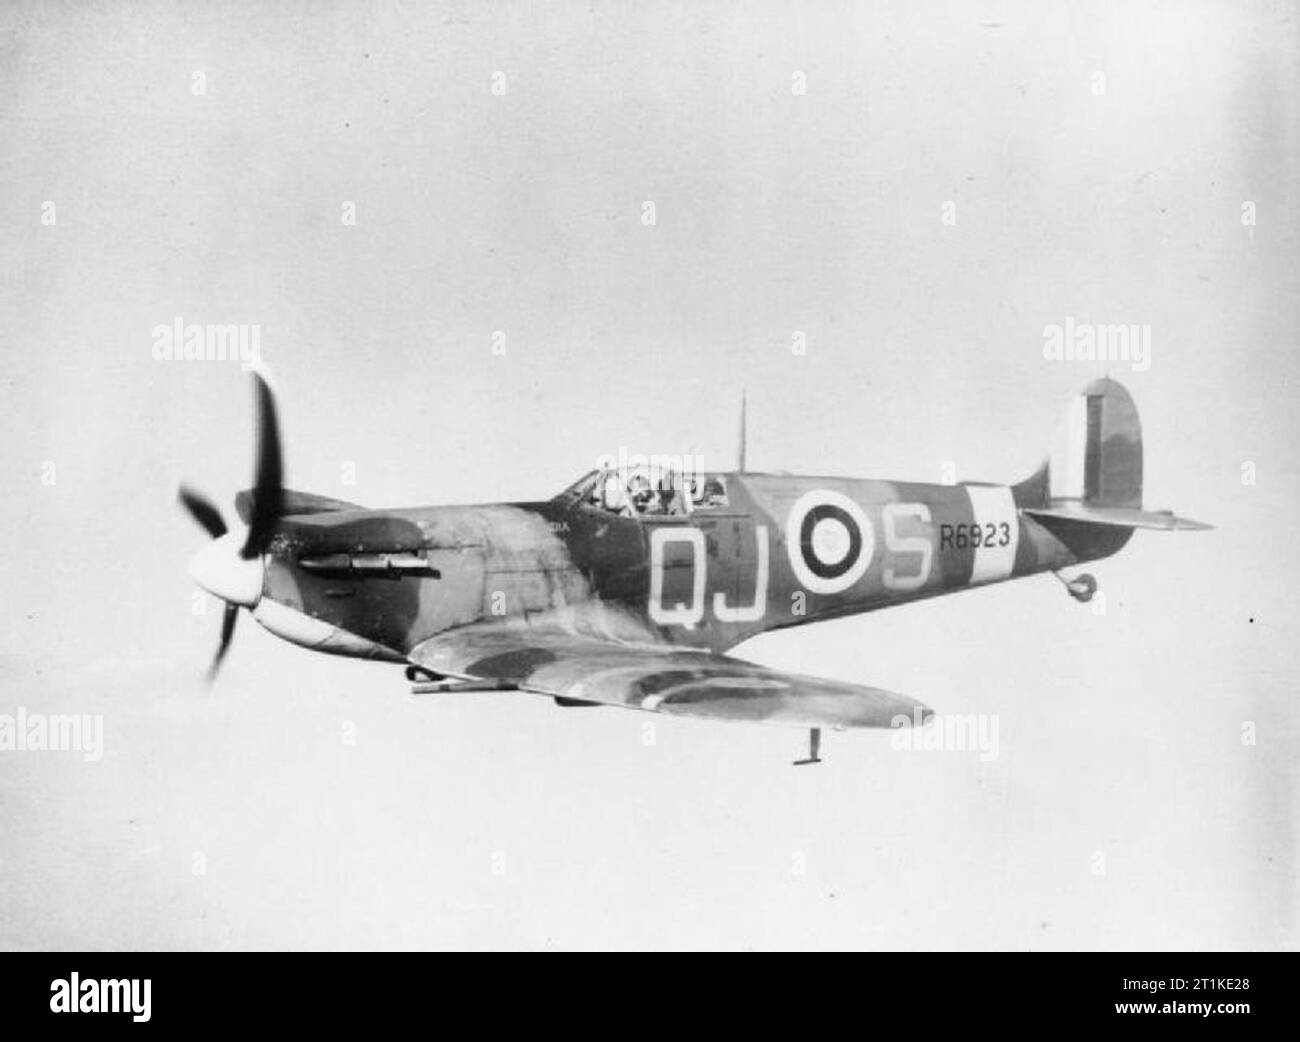 Avion de la Royal Air Force, 1939-1945- Supermarine Spitfire. Spitfire Mark VB, R6923 ?QJ-S?, du No. 92 Squadron RAF basé à Biggin Hill, Kent, en vol. Le R6923 était à l'origine un Mark I, converti en Mark V après avoir servi avec le No. 19 Squadron et le No. 7 Operational Training Unit en 1940. Il a été abattu au-dessus de la mer par un Messerschmitt BF 109 le 22 juin 1941 Banque D'Images